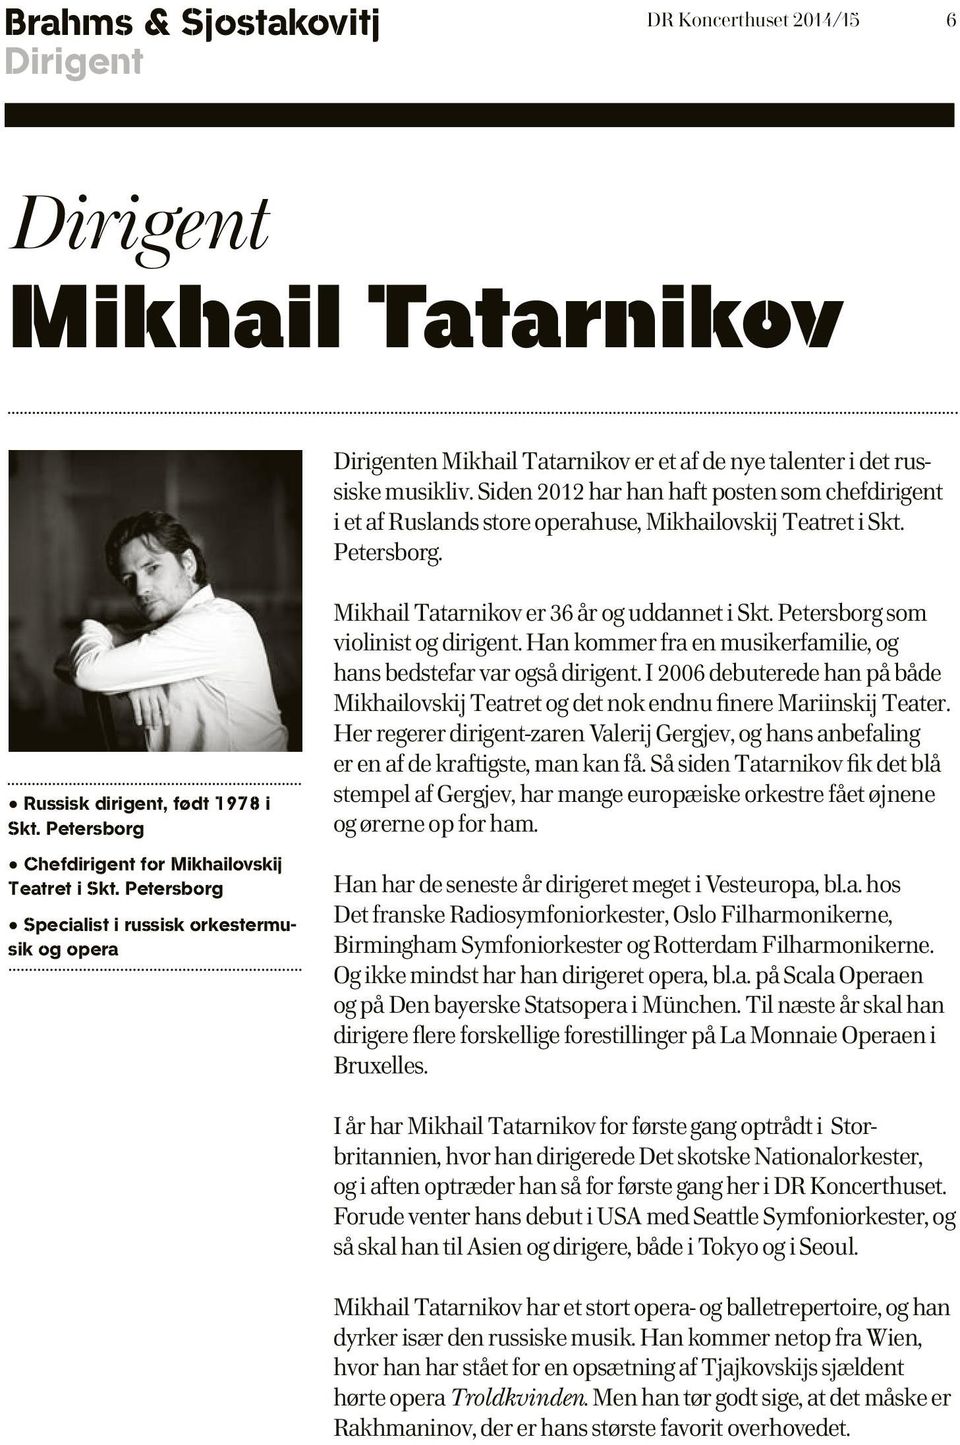 Petersborg Chefdirigent for Mikhailovskij Teatret i Skt. Petersborg Specialist i russisk orkestermusik og opera Mikhail Tatarnikov er 36 år og uddannet i Skt. Petersborg som violinist og dirigent.